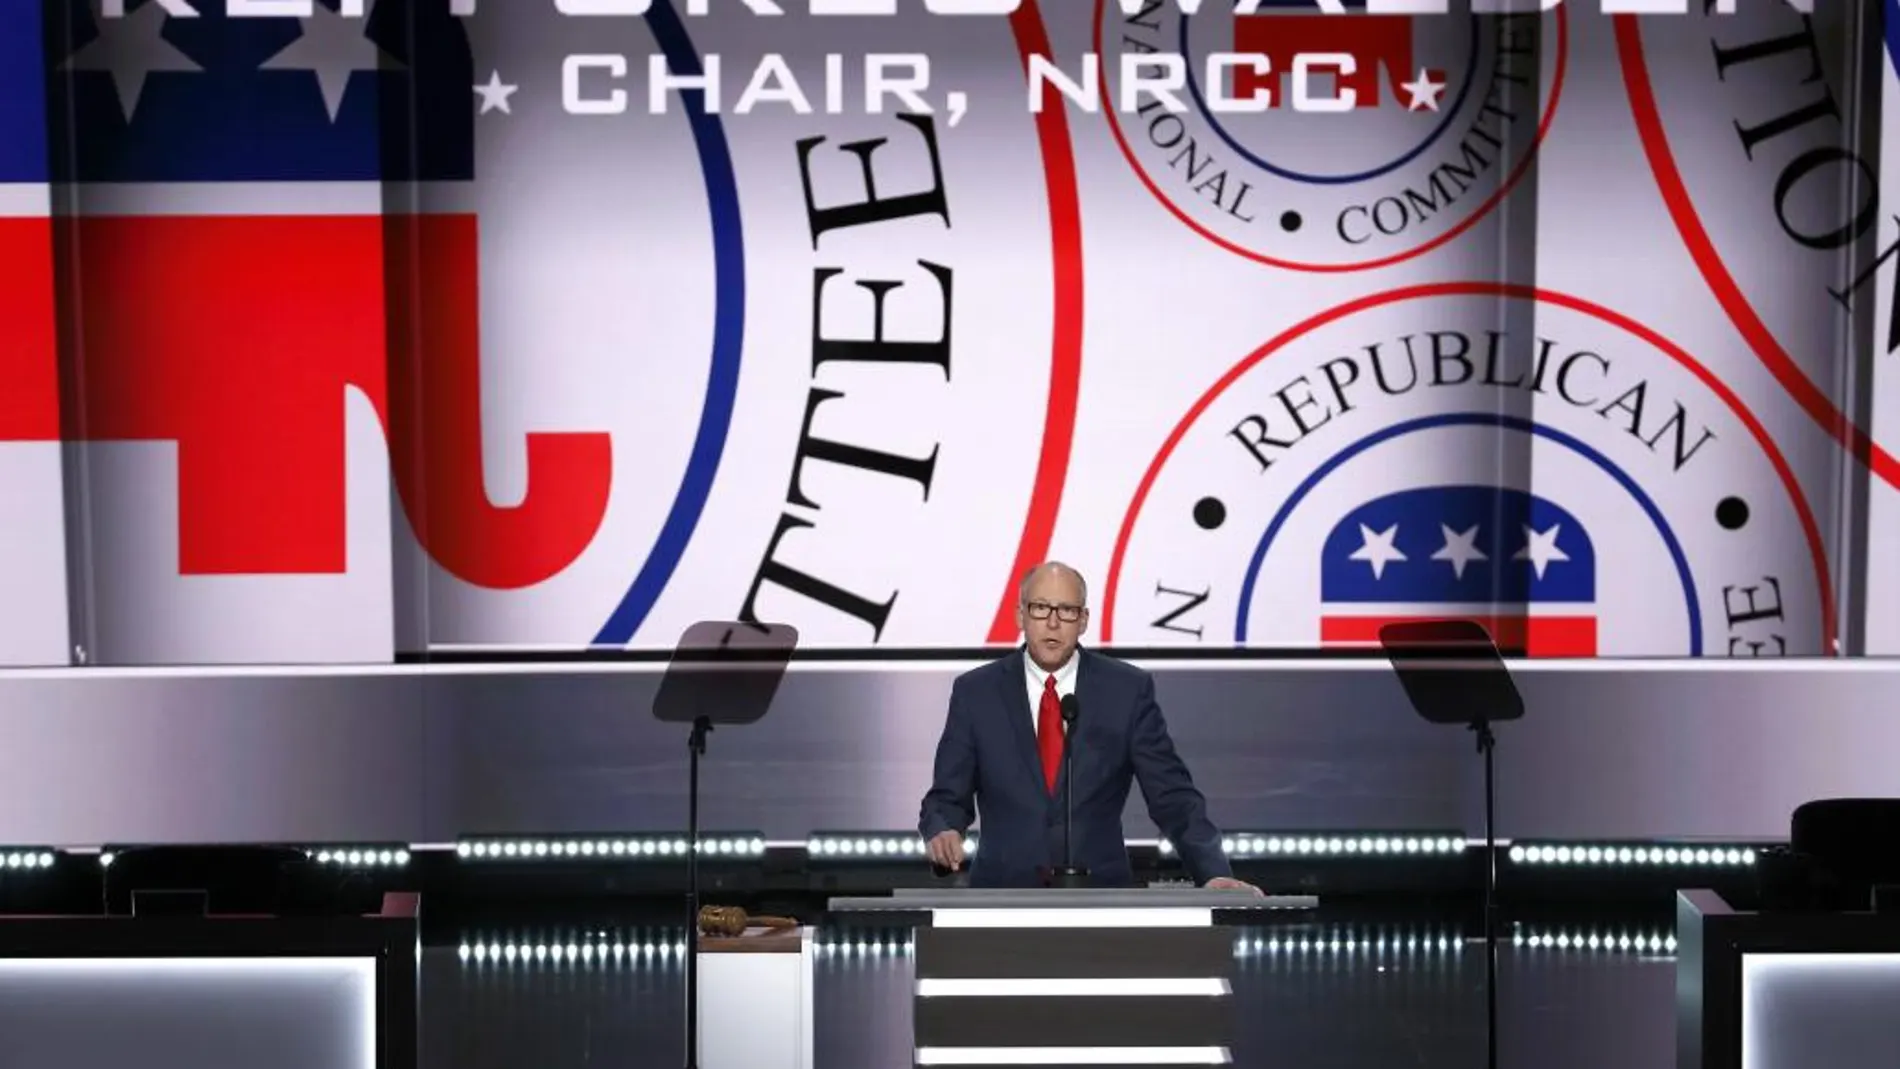 El presidente del Comité Congresional Nacional Republicano, Greg Walden, habla durante el primer día de la Convención Republicana en el Centro Nacional Republicano Quicken Loans Arena de Cleveland, Ohio.